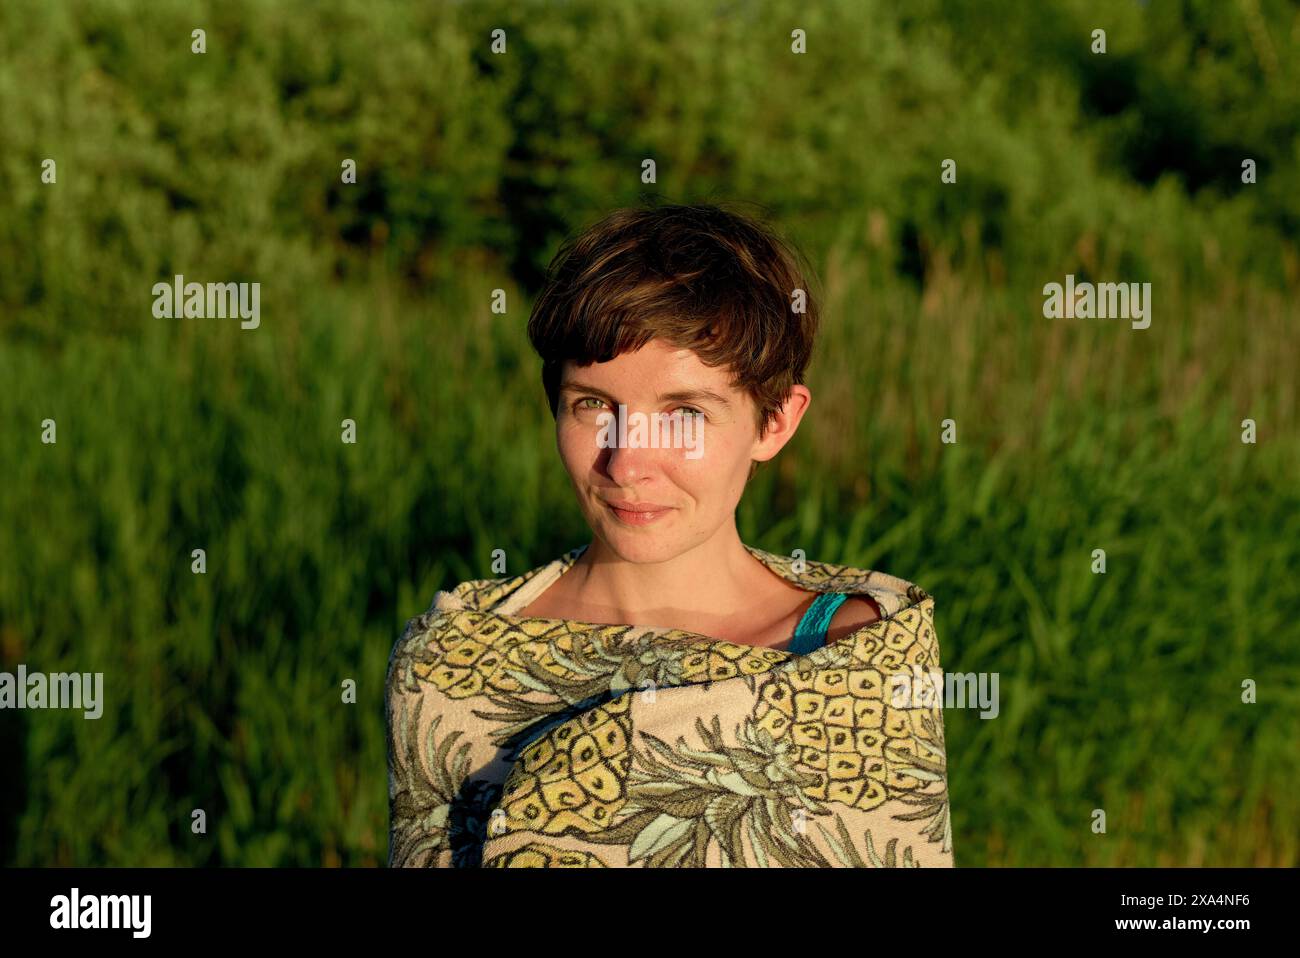 Una donna sorridente con capelli corti in piedi in un campo con alte piante verdi sullo sfondo, durante quella che sembra essere l'ora d'oro del tramonto. Foto Stock